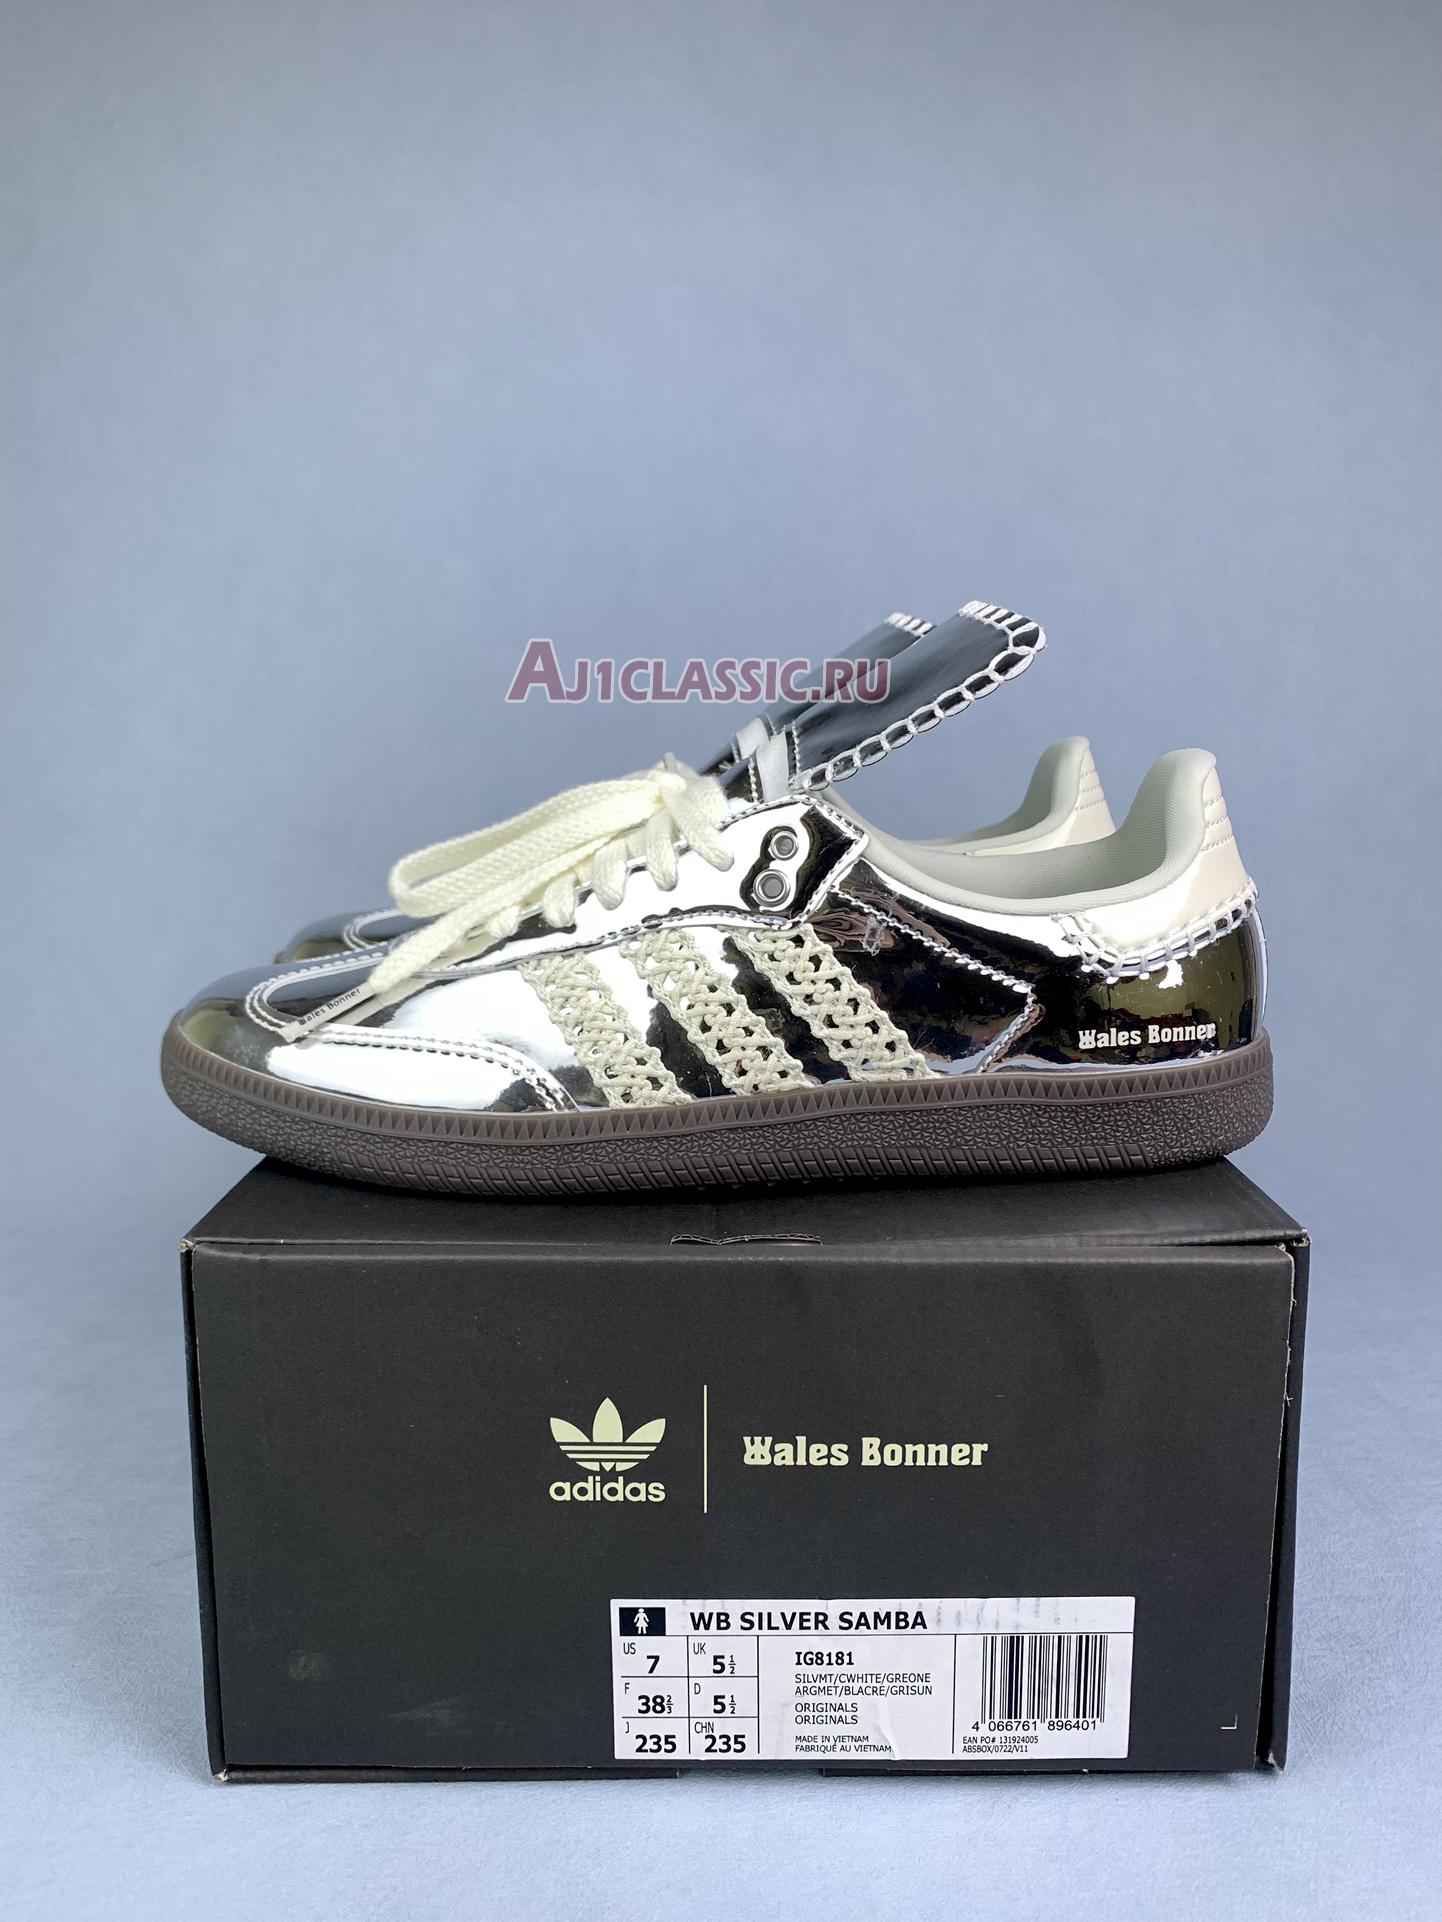 Adidas Samba "Wales Bonner Silver" IG8181-1